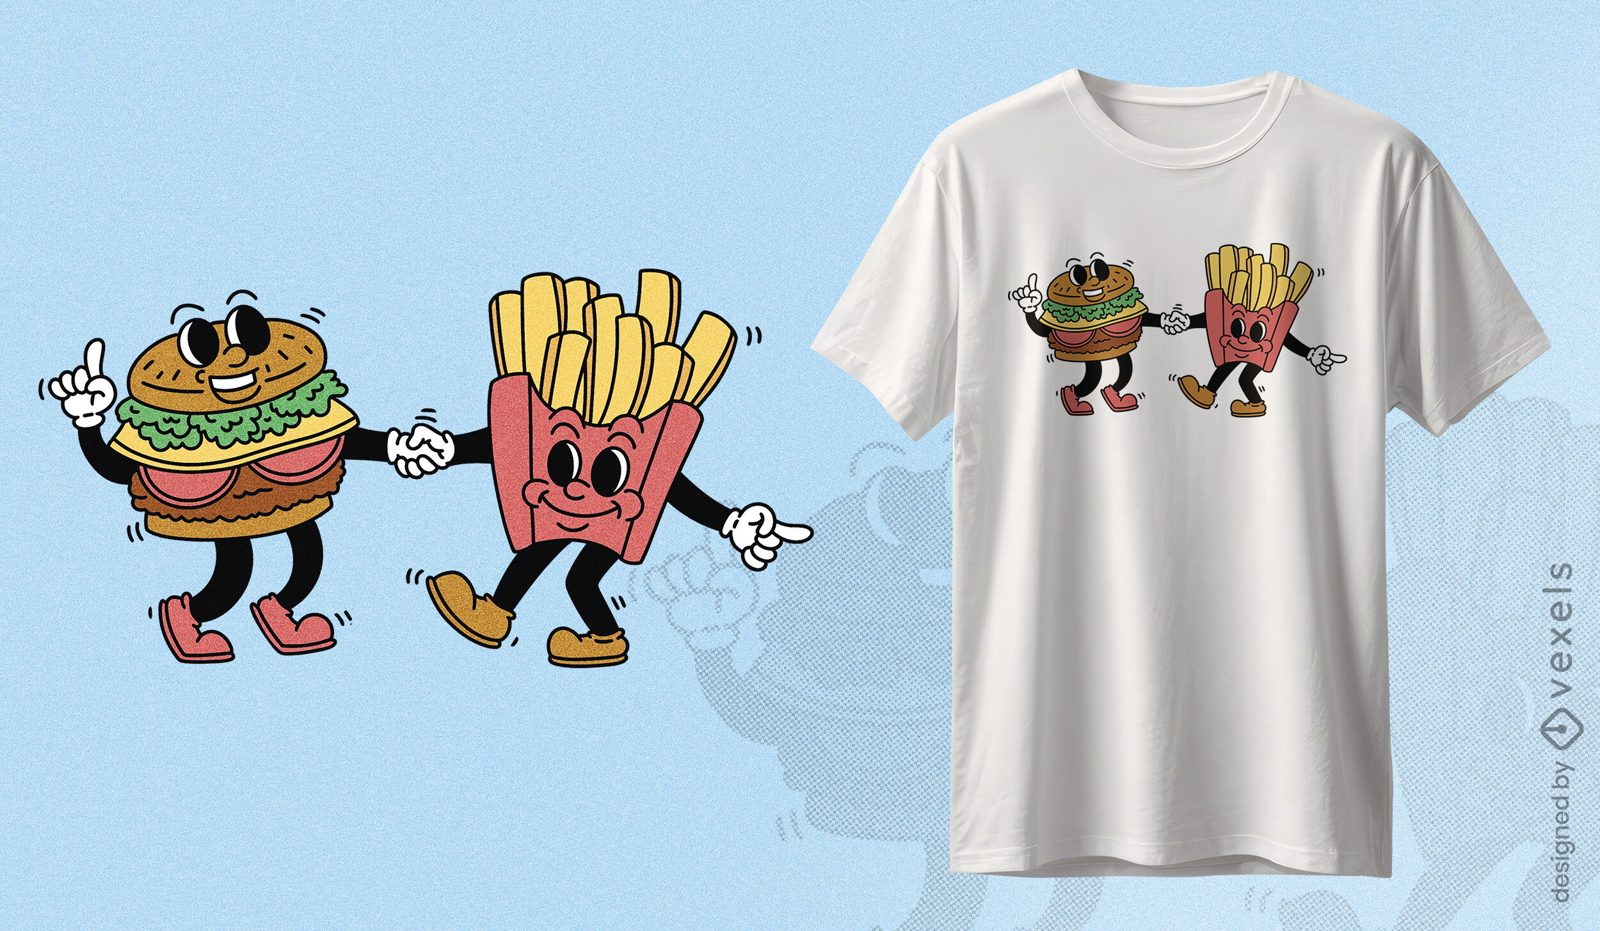 Dise?o de camiseta de personajes de comida r?pida.